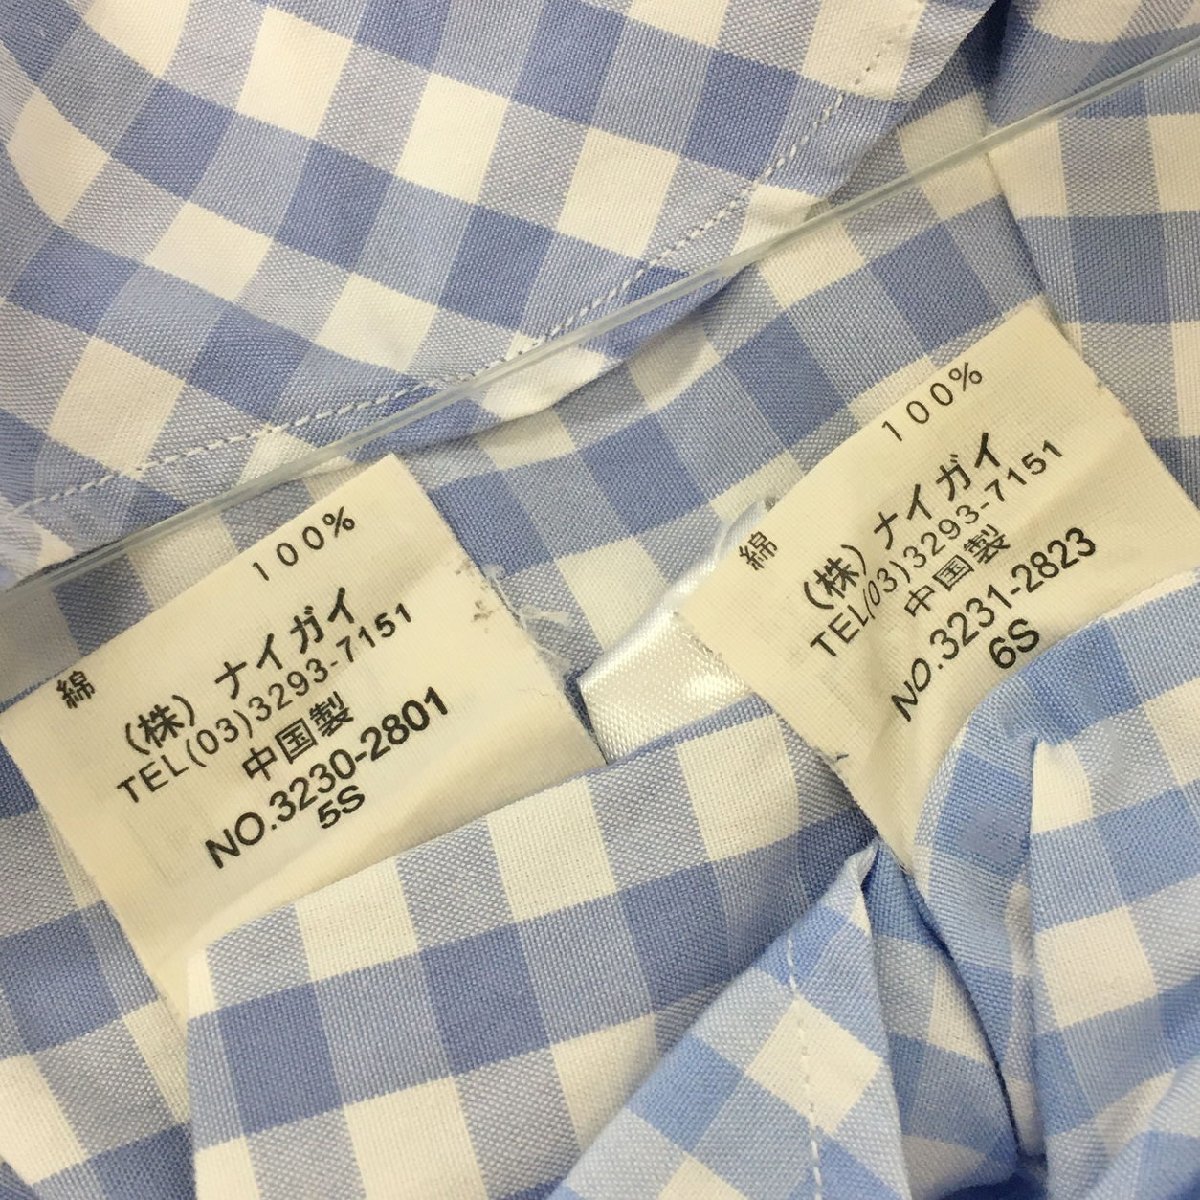  Ralph Lauren рубашка 100 3 позиций комплект продажа Kids одежда 2311WS093